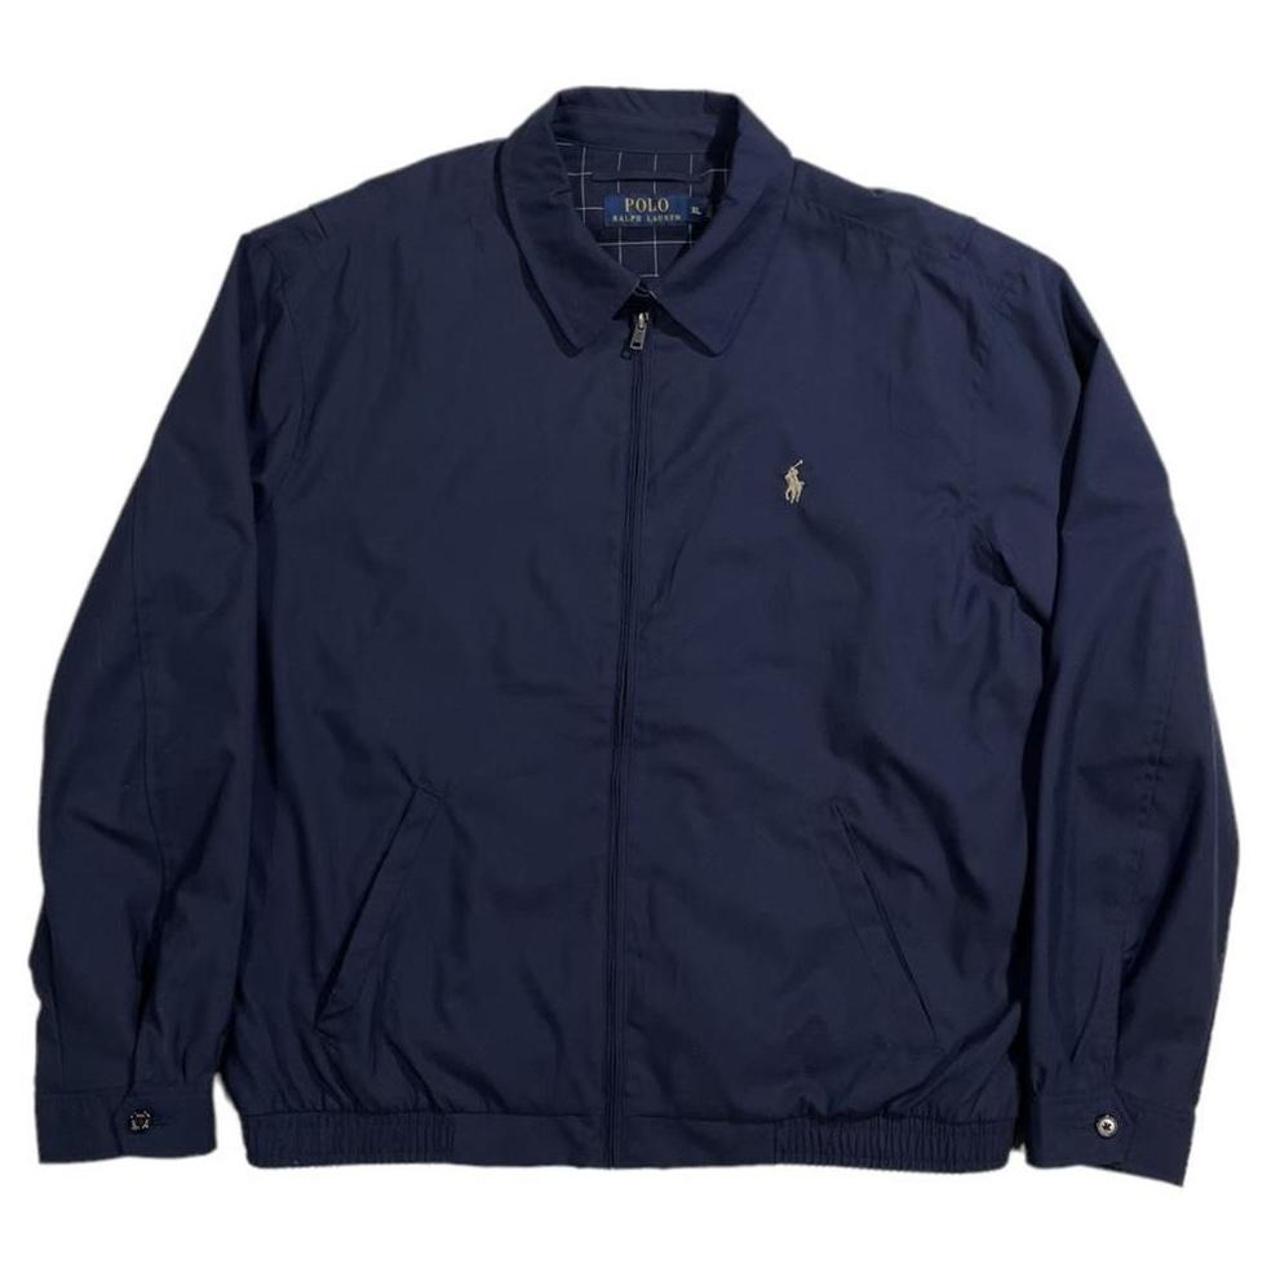 Polo Ralph Lauren Men's Jacket | Depop